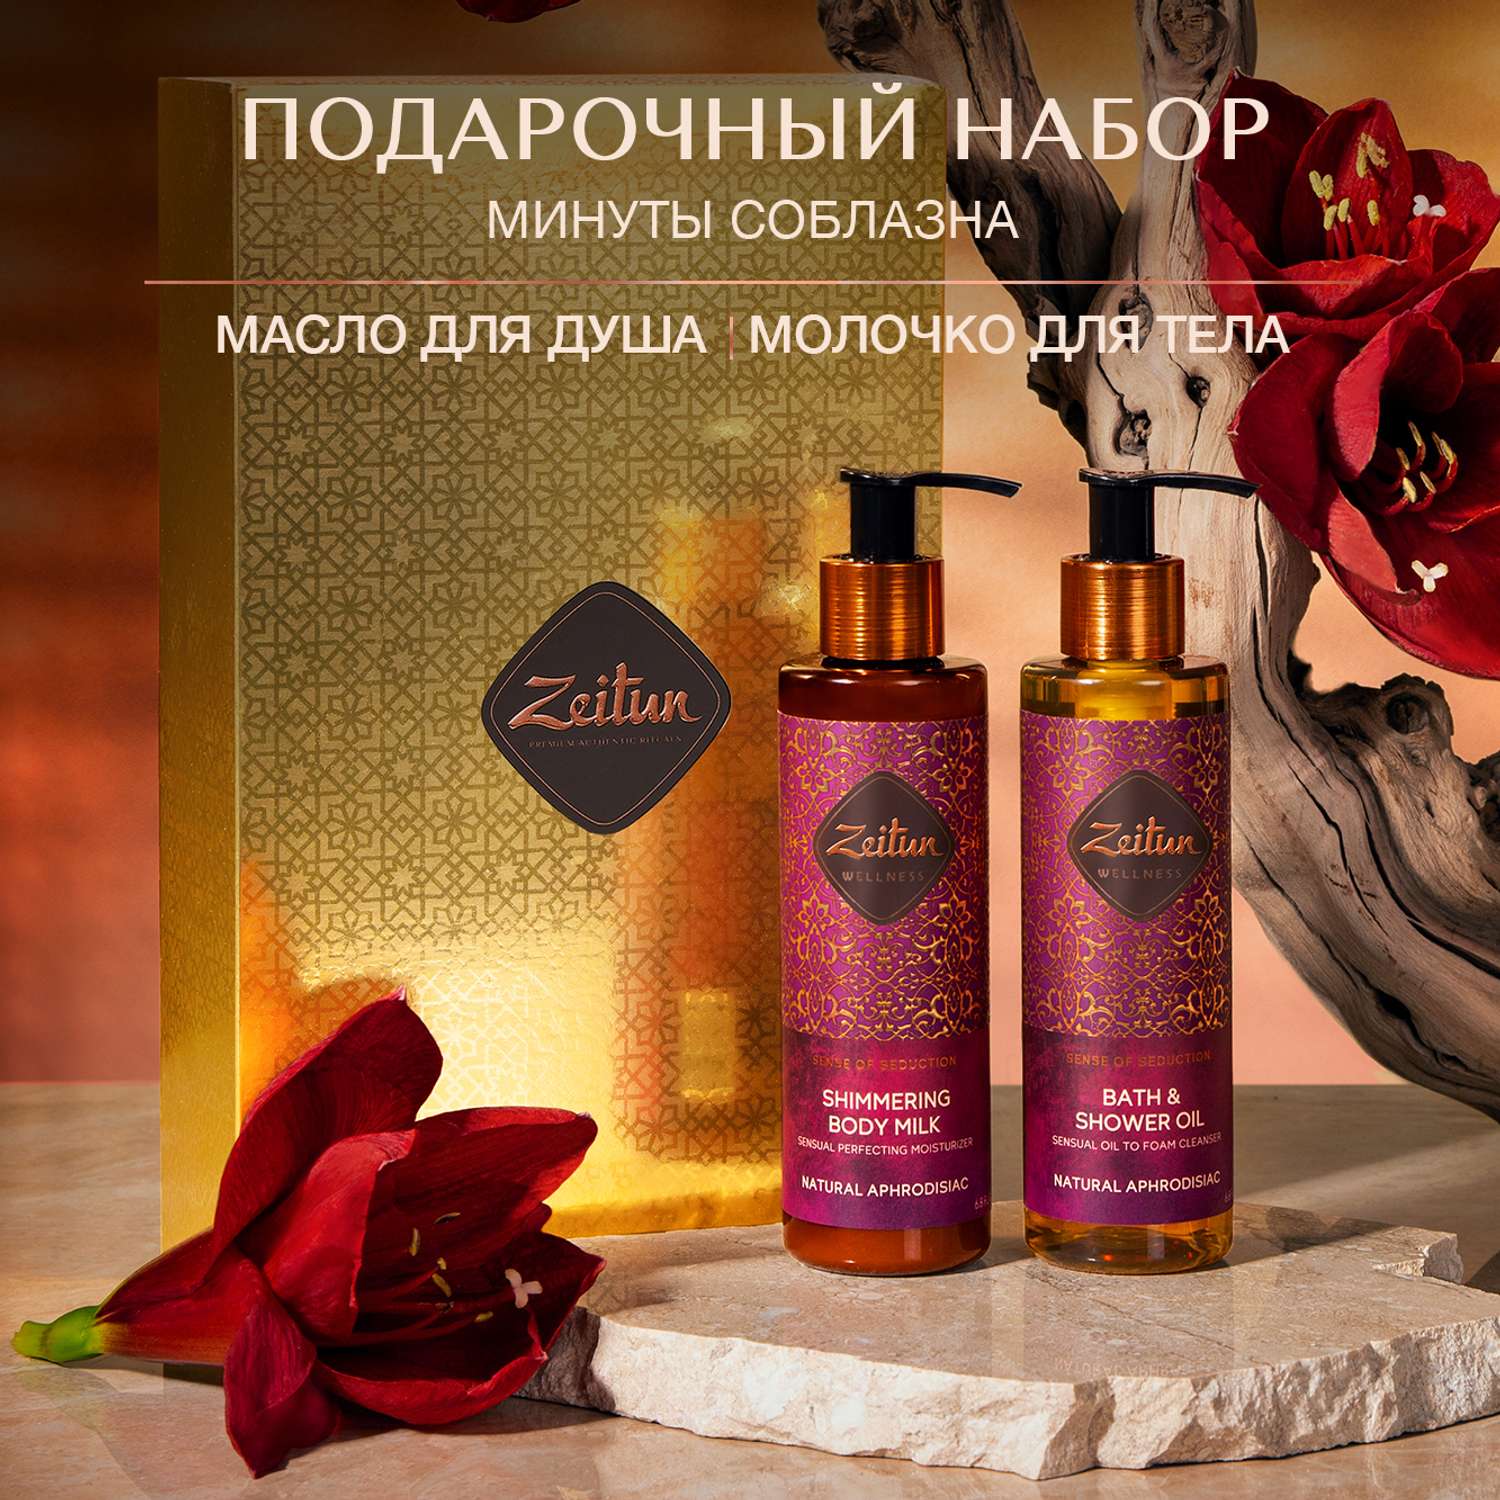 Подарочный набор женский Zeitun Минуты соблазна с афродизиаками масло для душа и молочко - фото 2